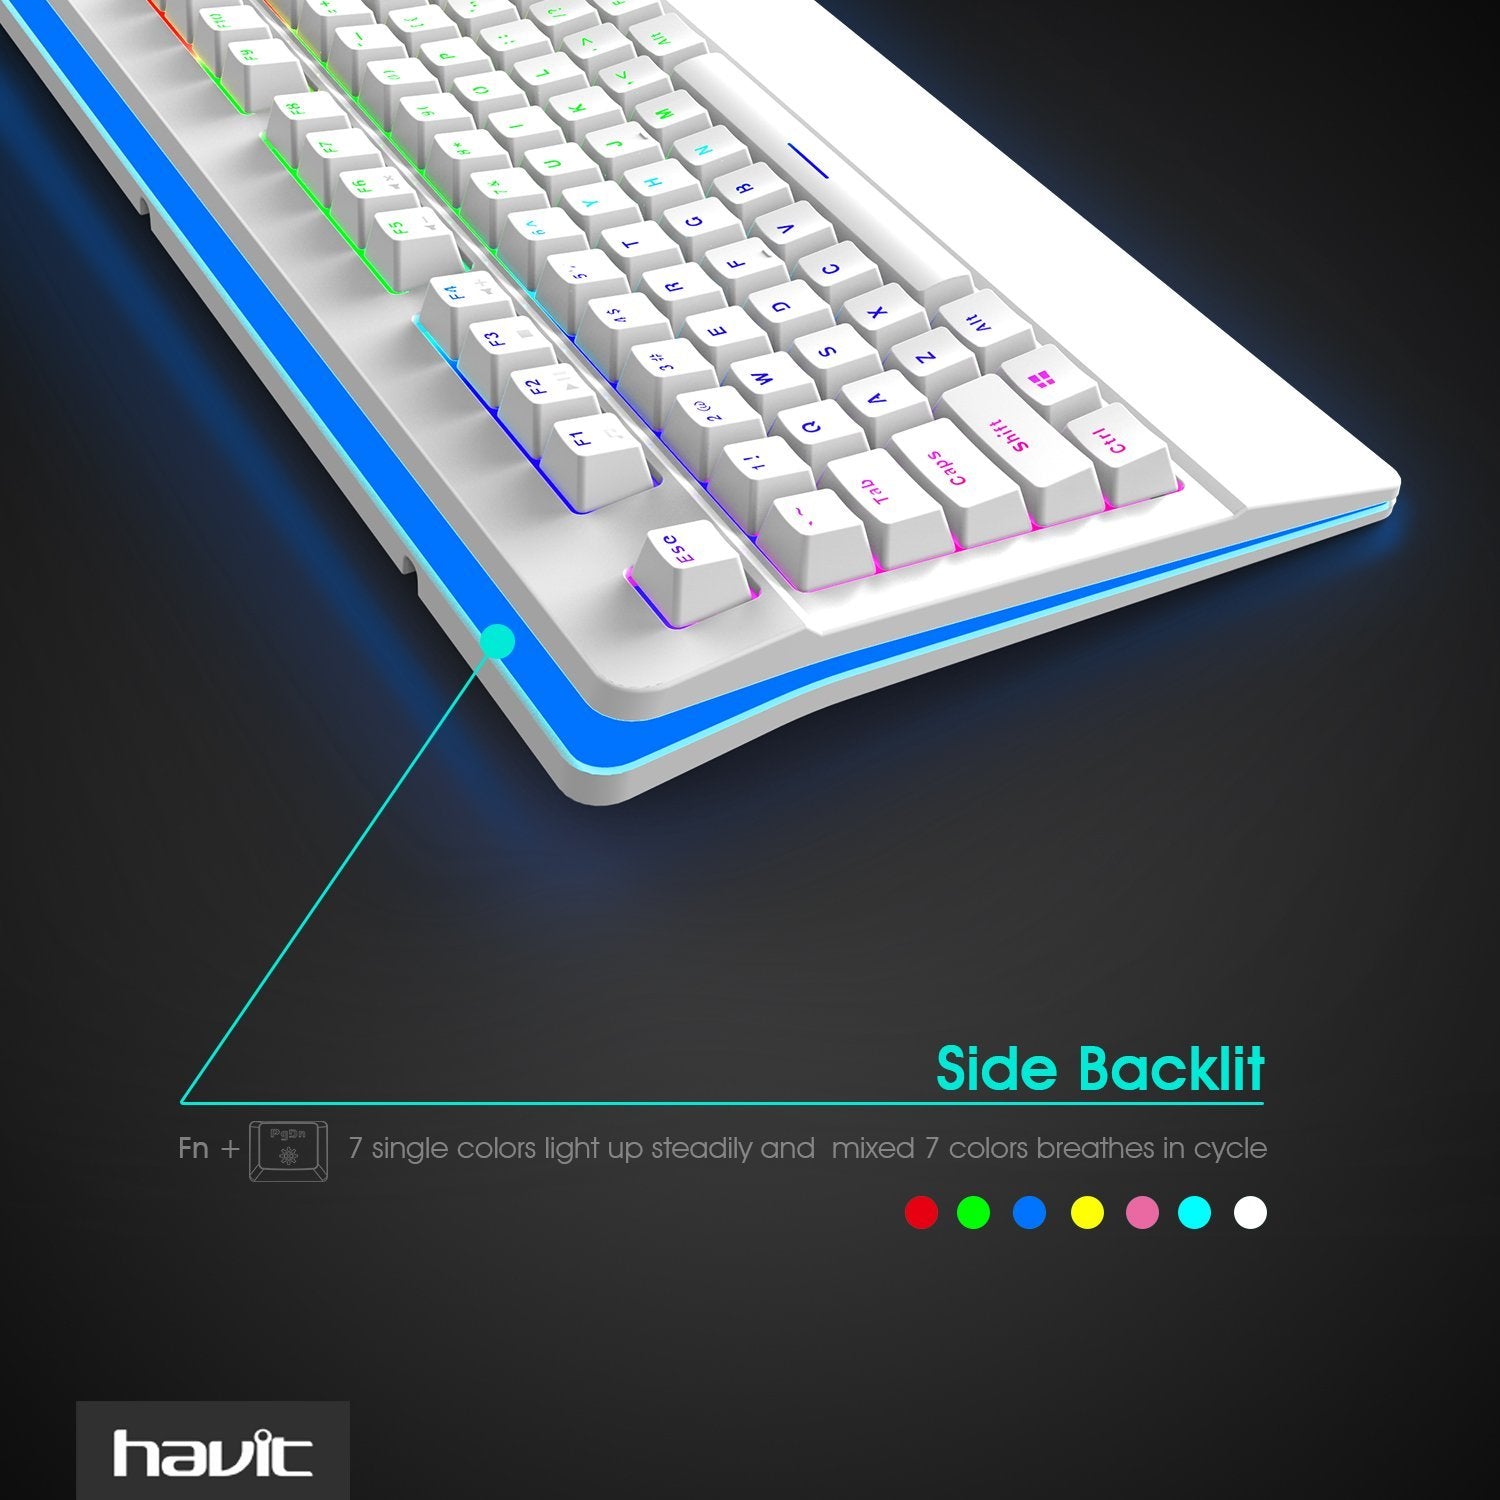 HAVIT HV-KB389L Mechanische Gaming-Tastatur mit RGB-Hintergrundbeleuchtung 